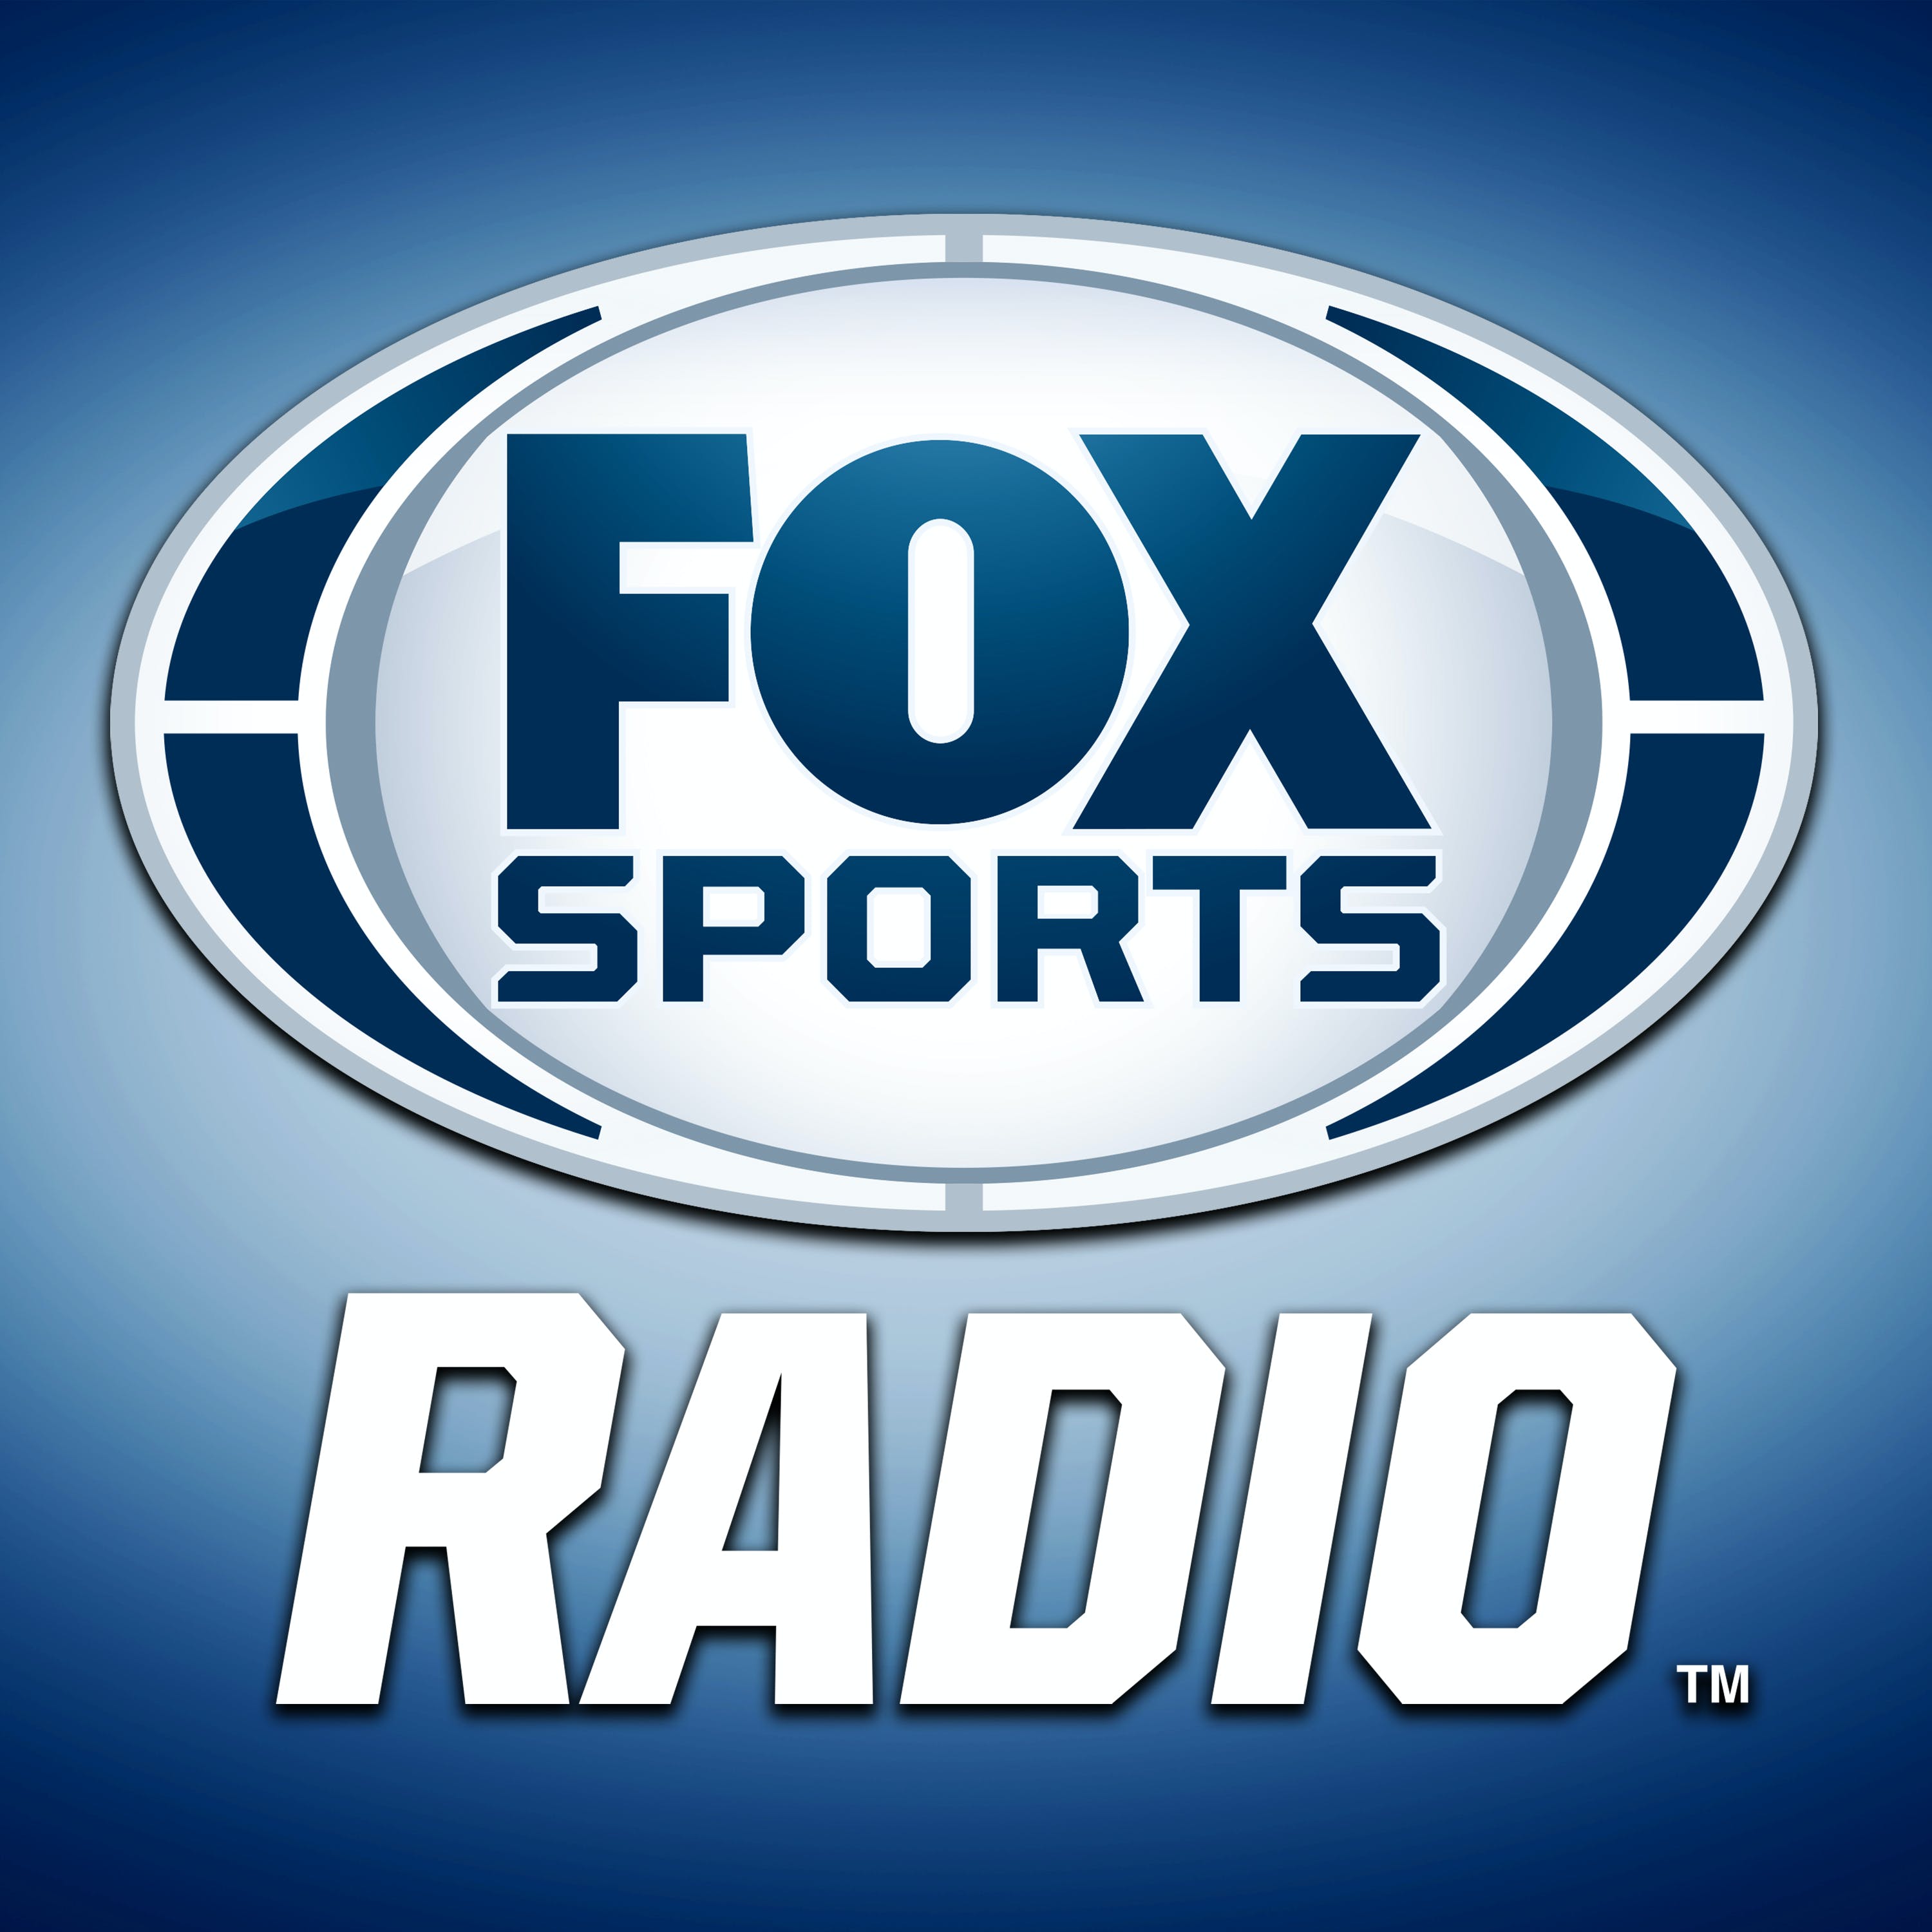 05/08/2021 - FOX Sports Saturday with Steve Hartman and Geoff Schwartz